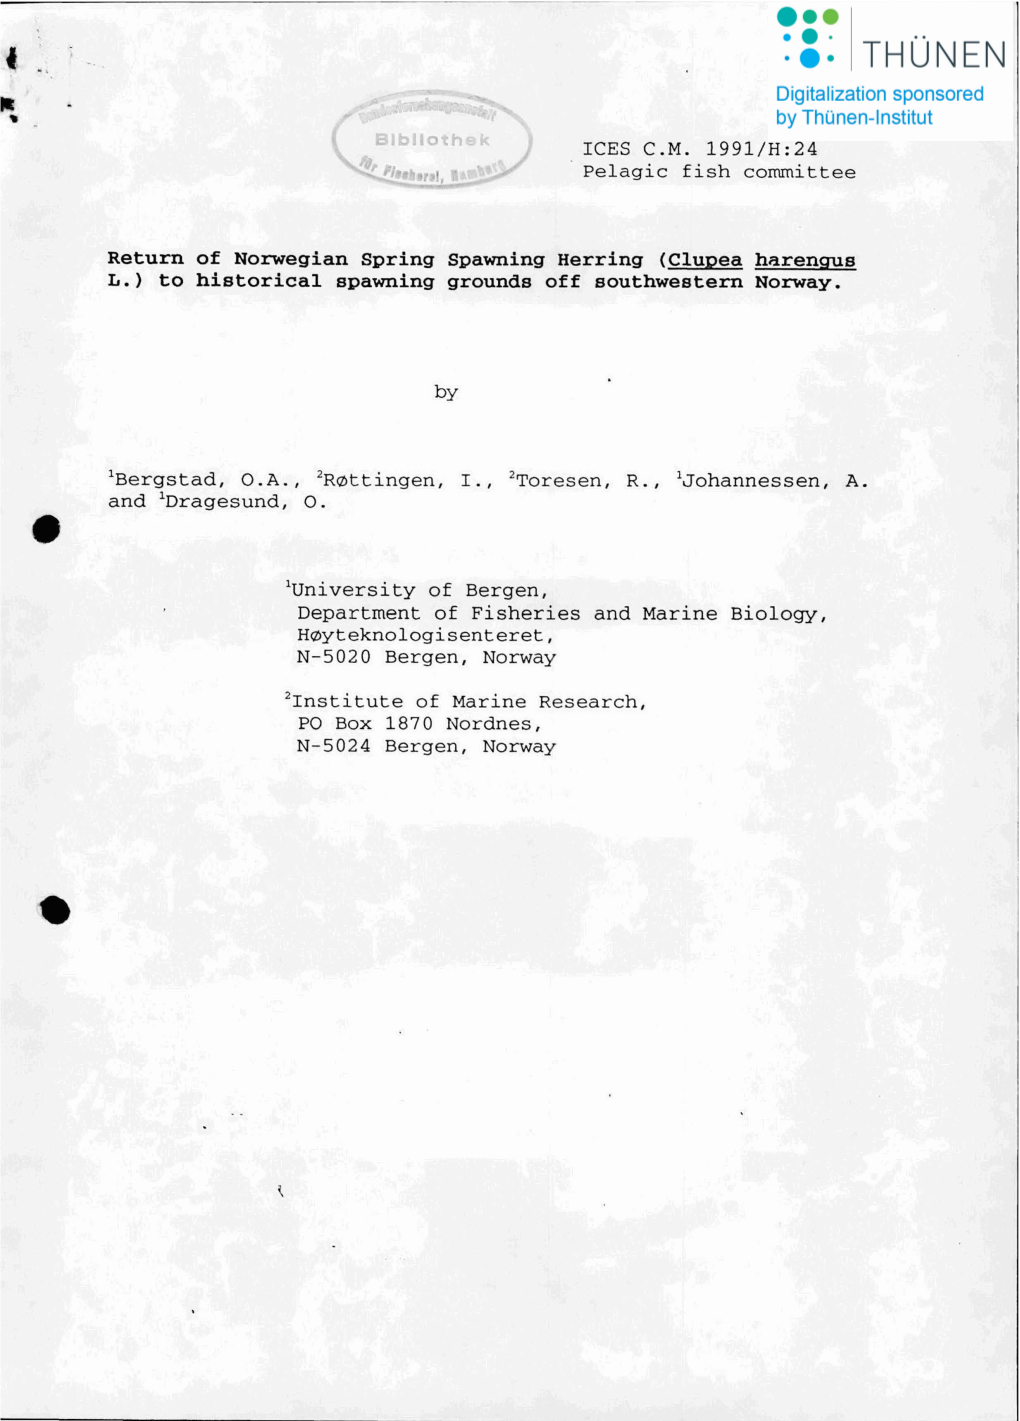 ICES C.M. 1991/H:24 Pelagic Fish Committee Return of Norwegian